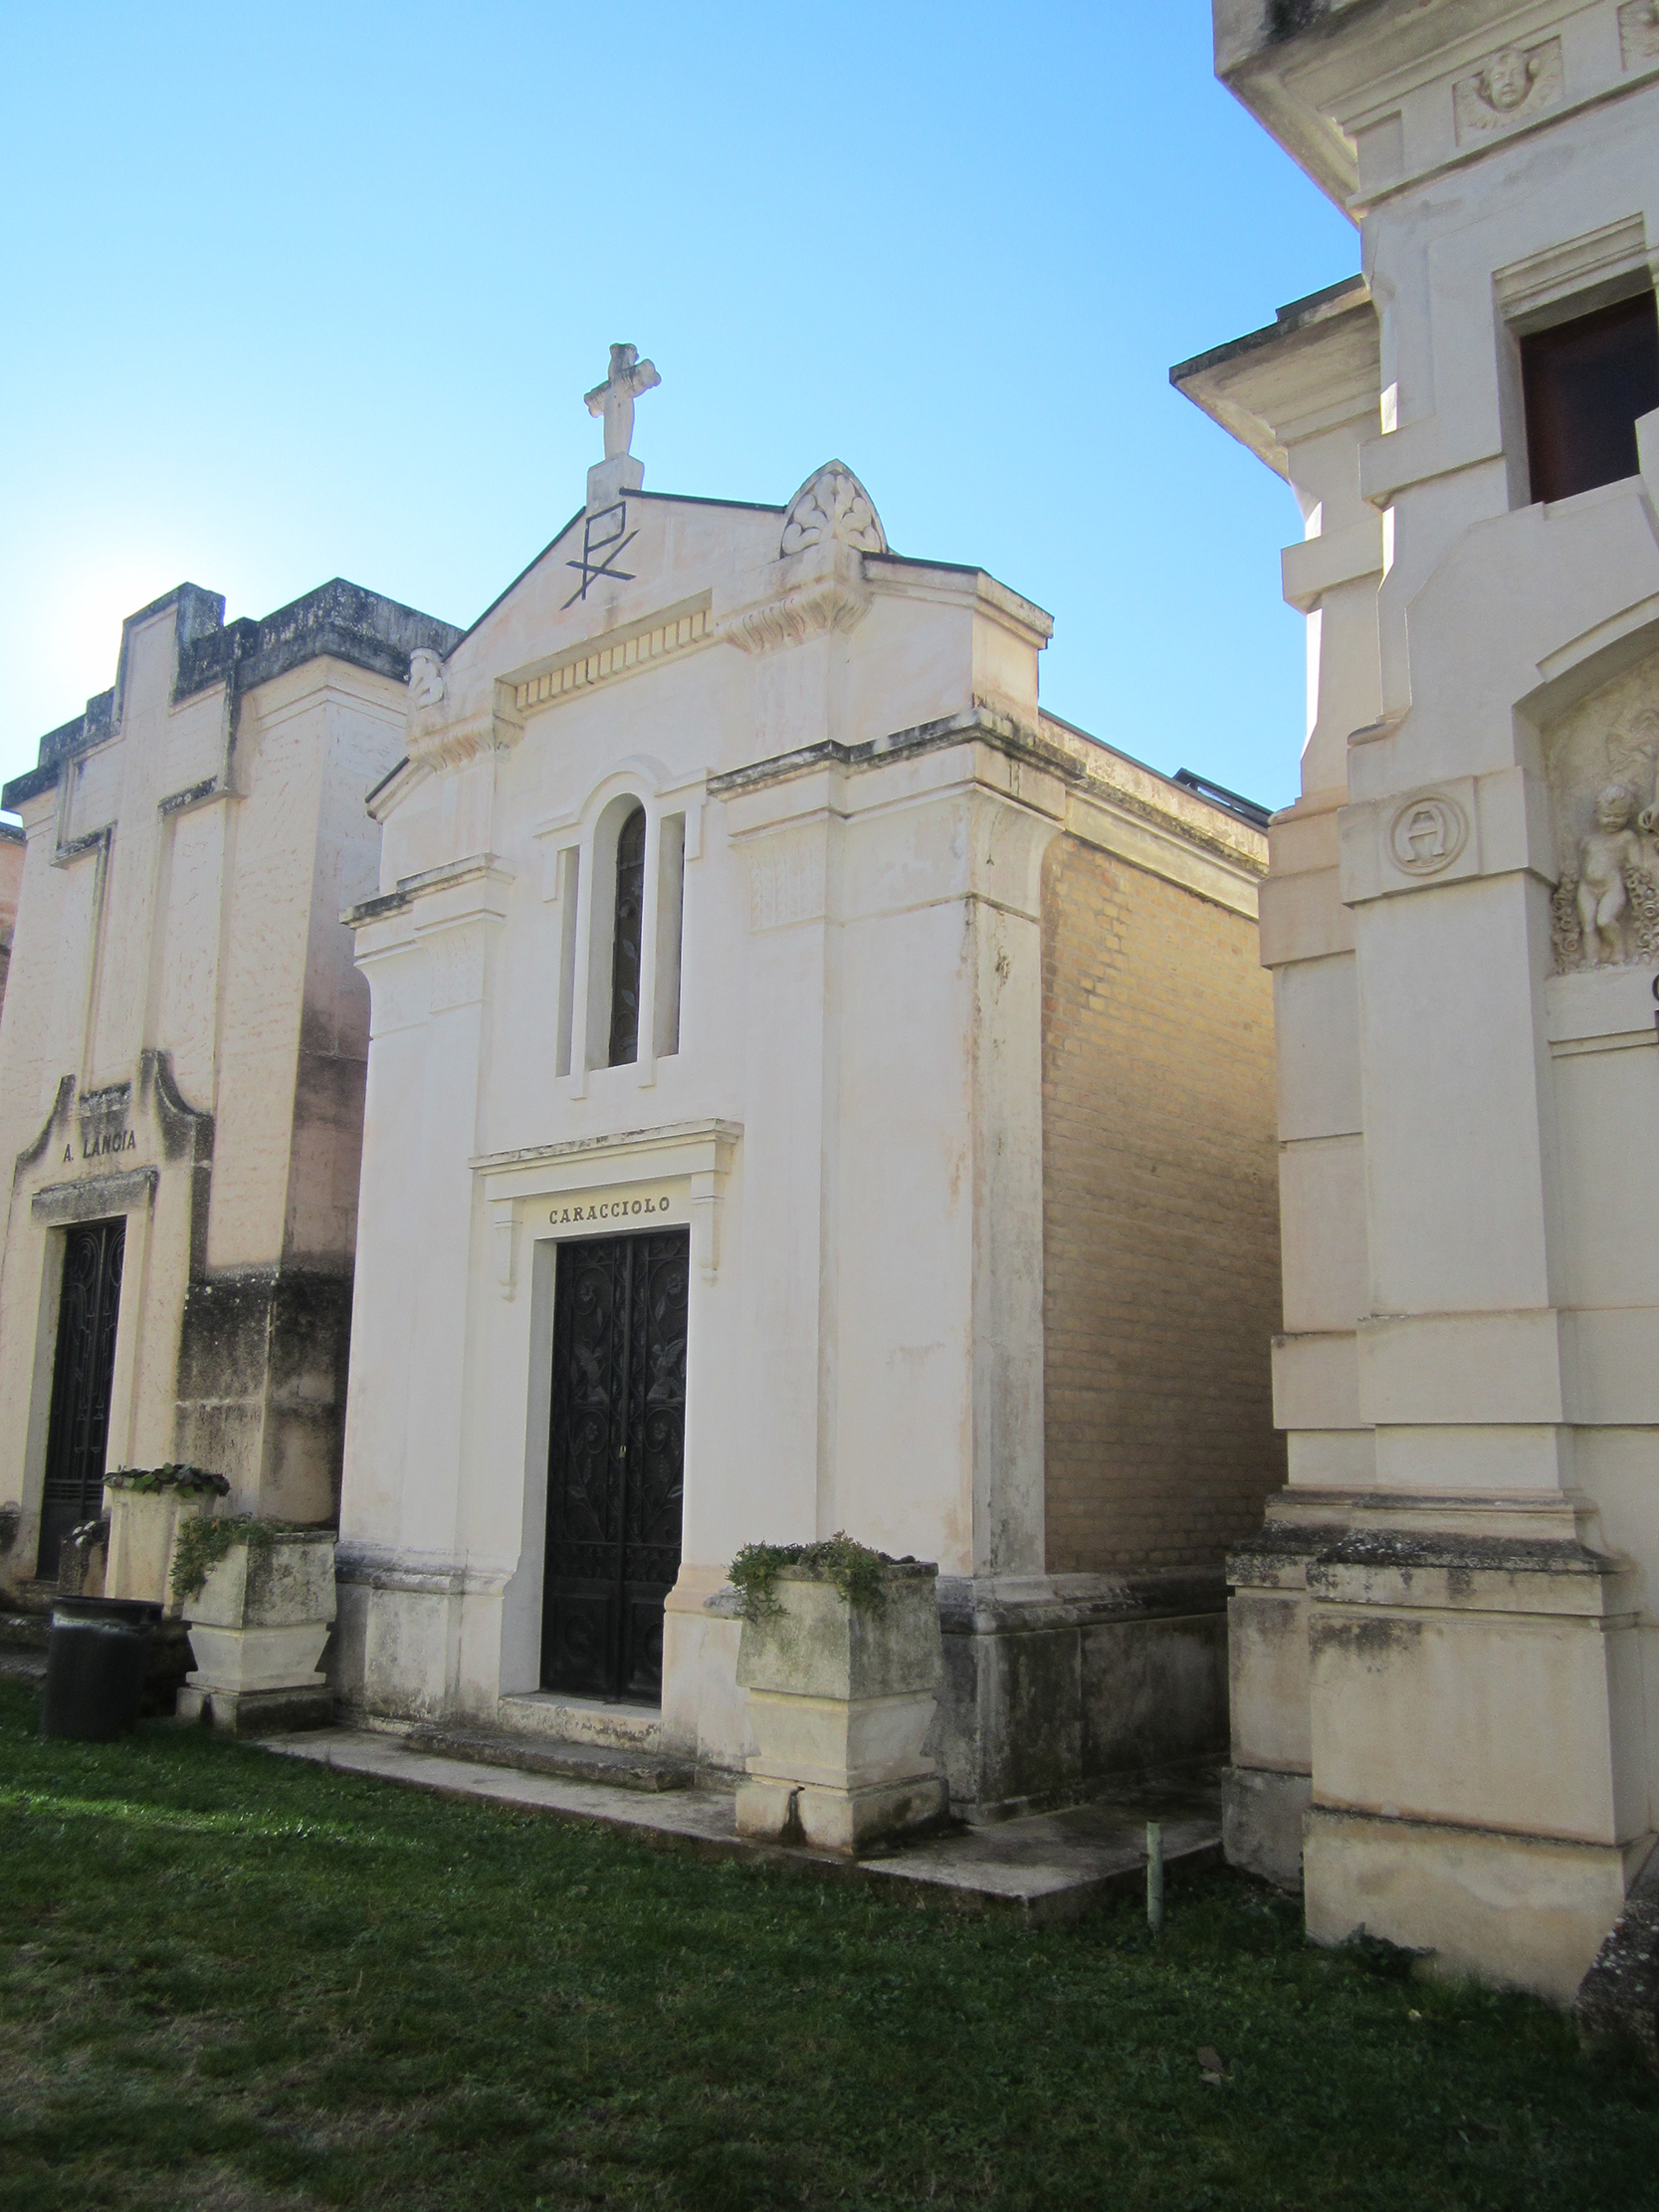 Cappella cimiteriale Caracciolo (cimitero, monumentale) - Sulmona (AQ) 